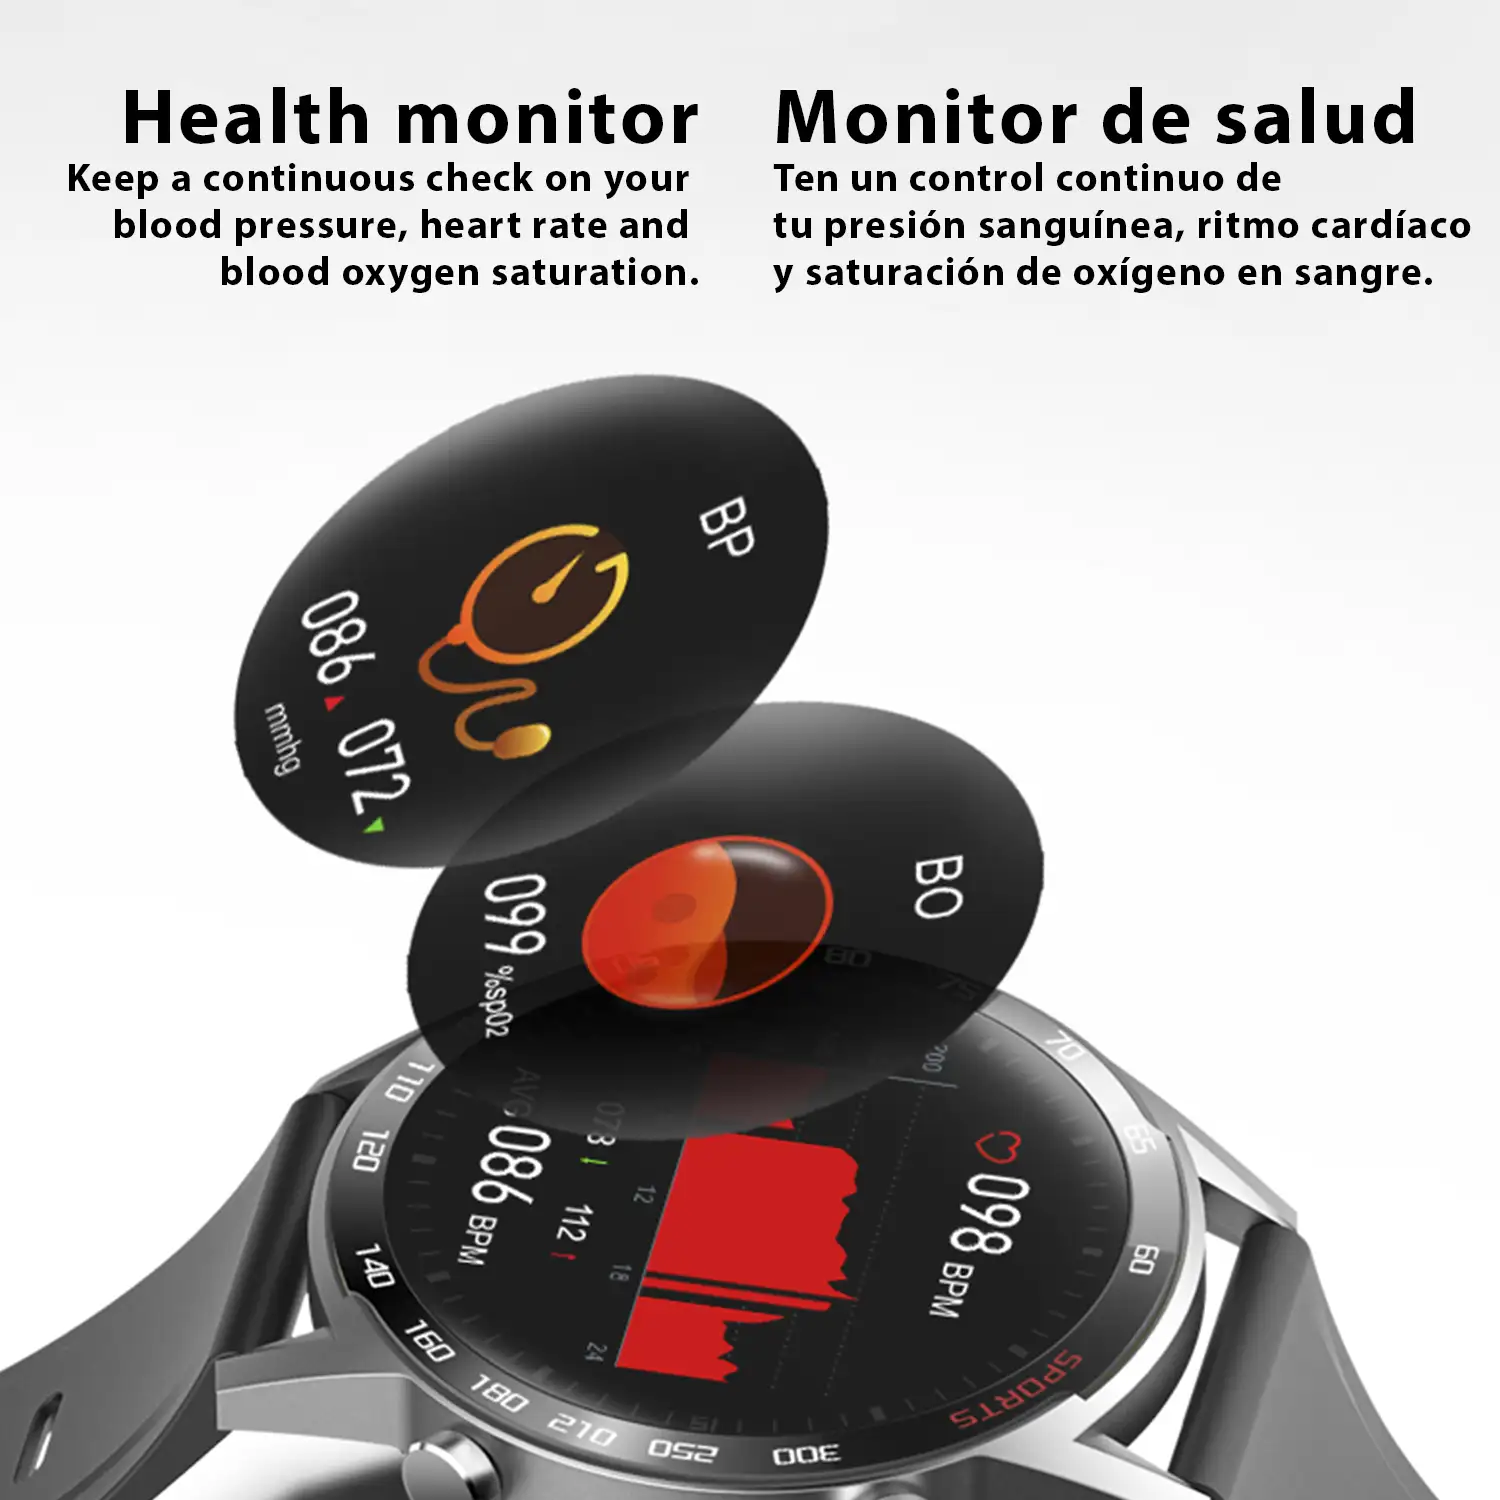 Smartwatch T23 con temperatura corporal, tensión, oxígeno en sangre y modo multideportivo.